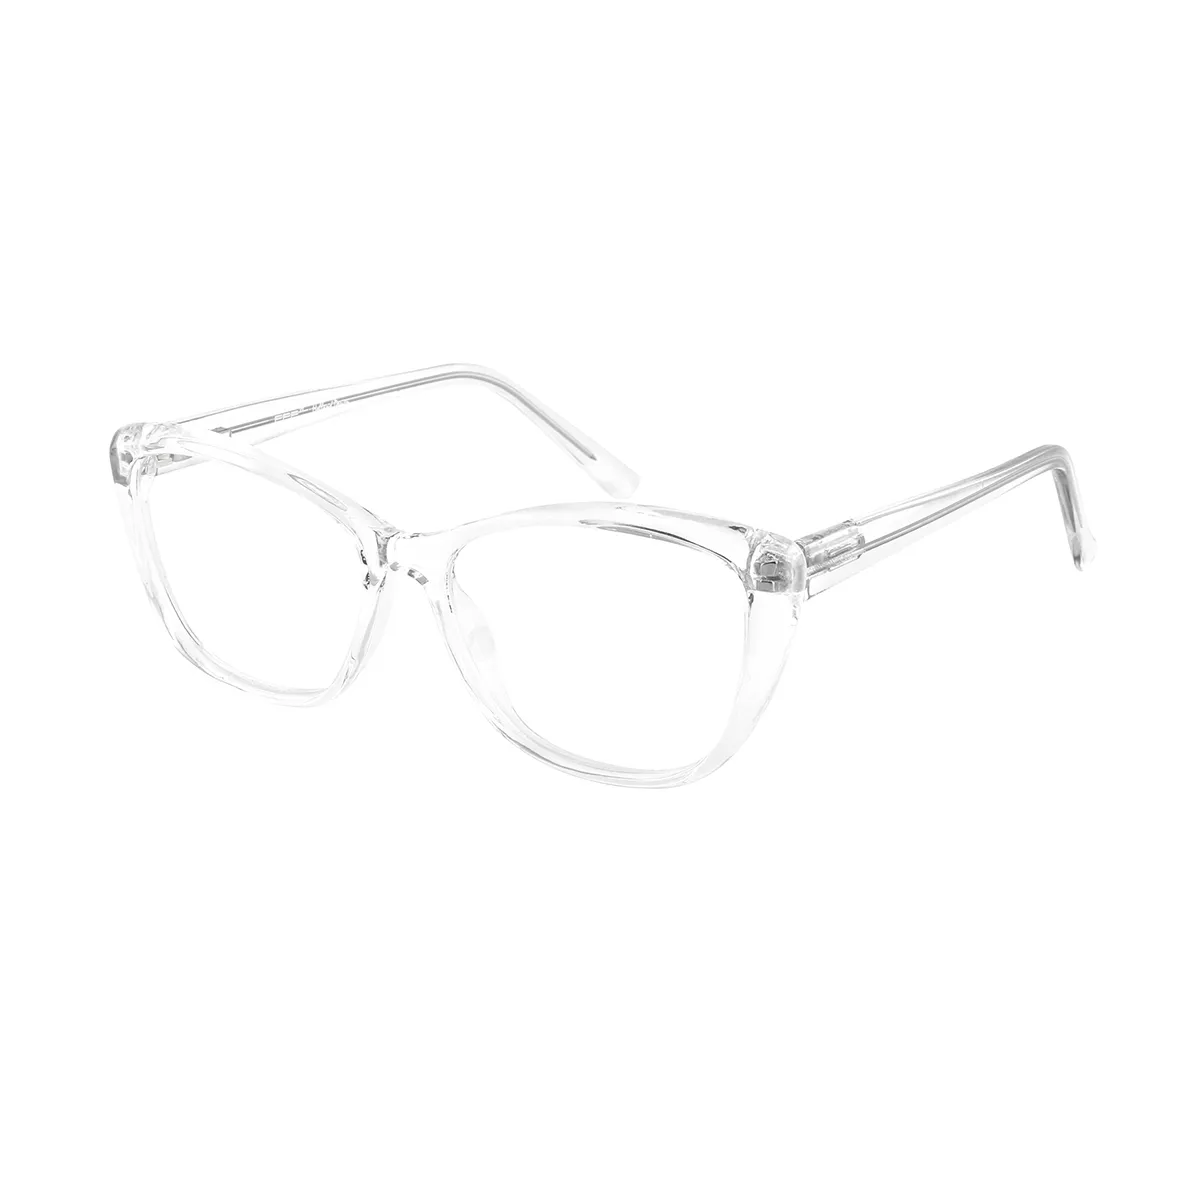 Classic Cat-eye Demi-blue Eyeglasses for Women & Men